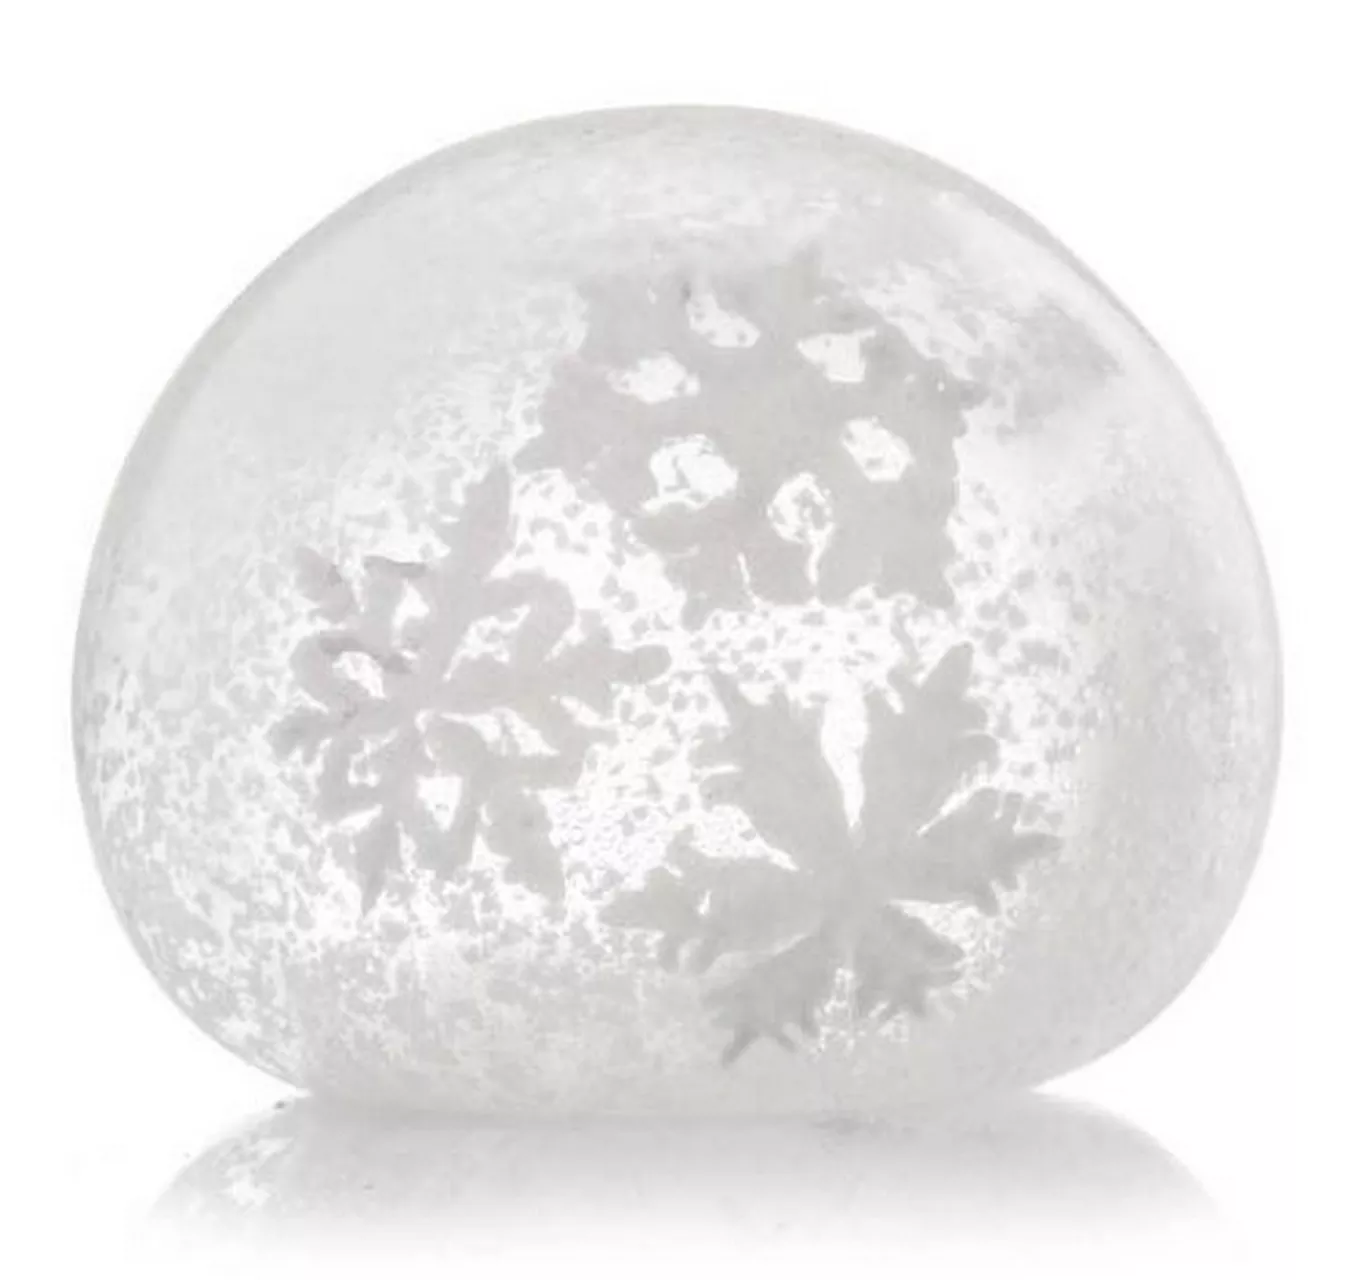 Spalt Snowball - Each